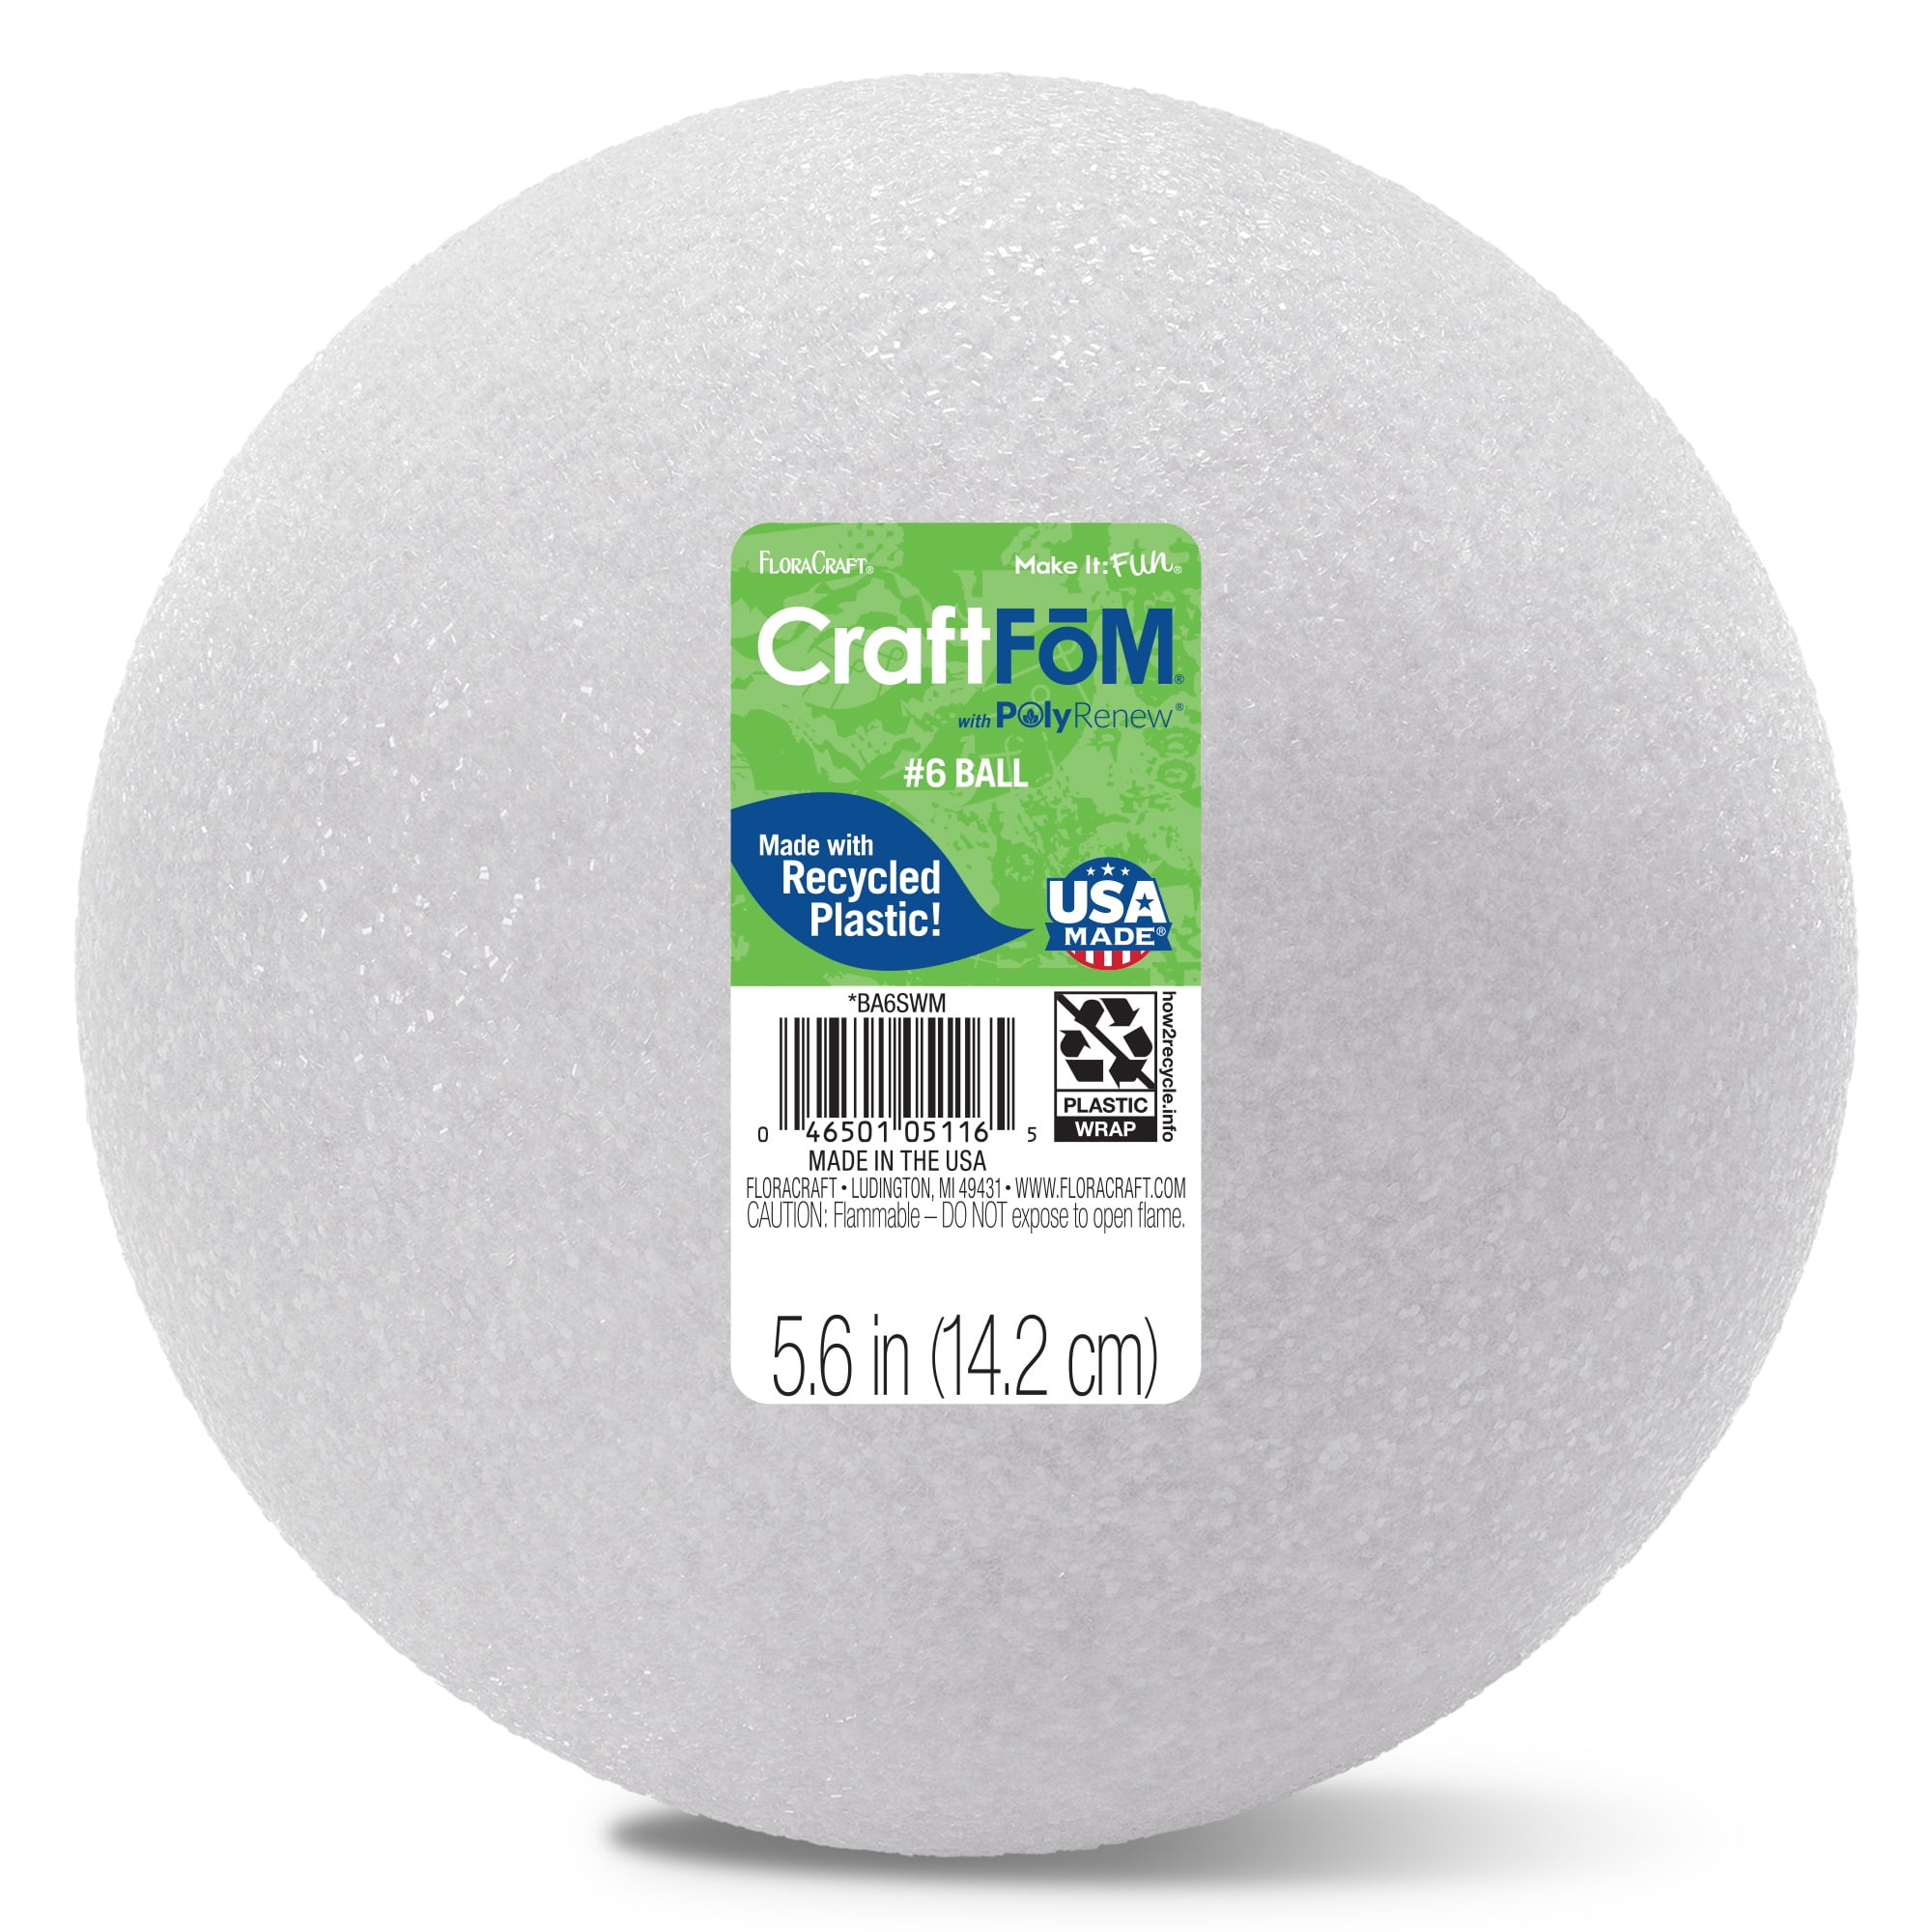 FloraCraft CraftFM Crafting Foam Ball 5.6 inch White